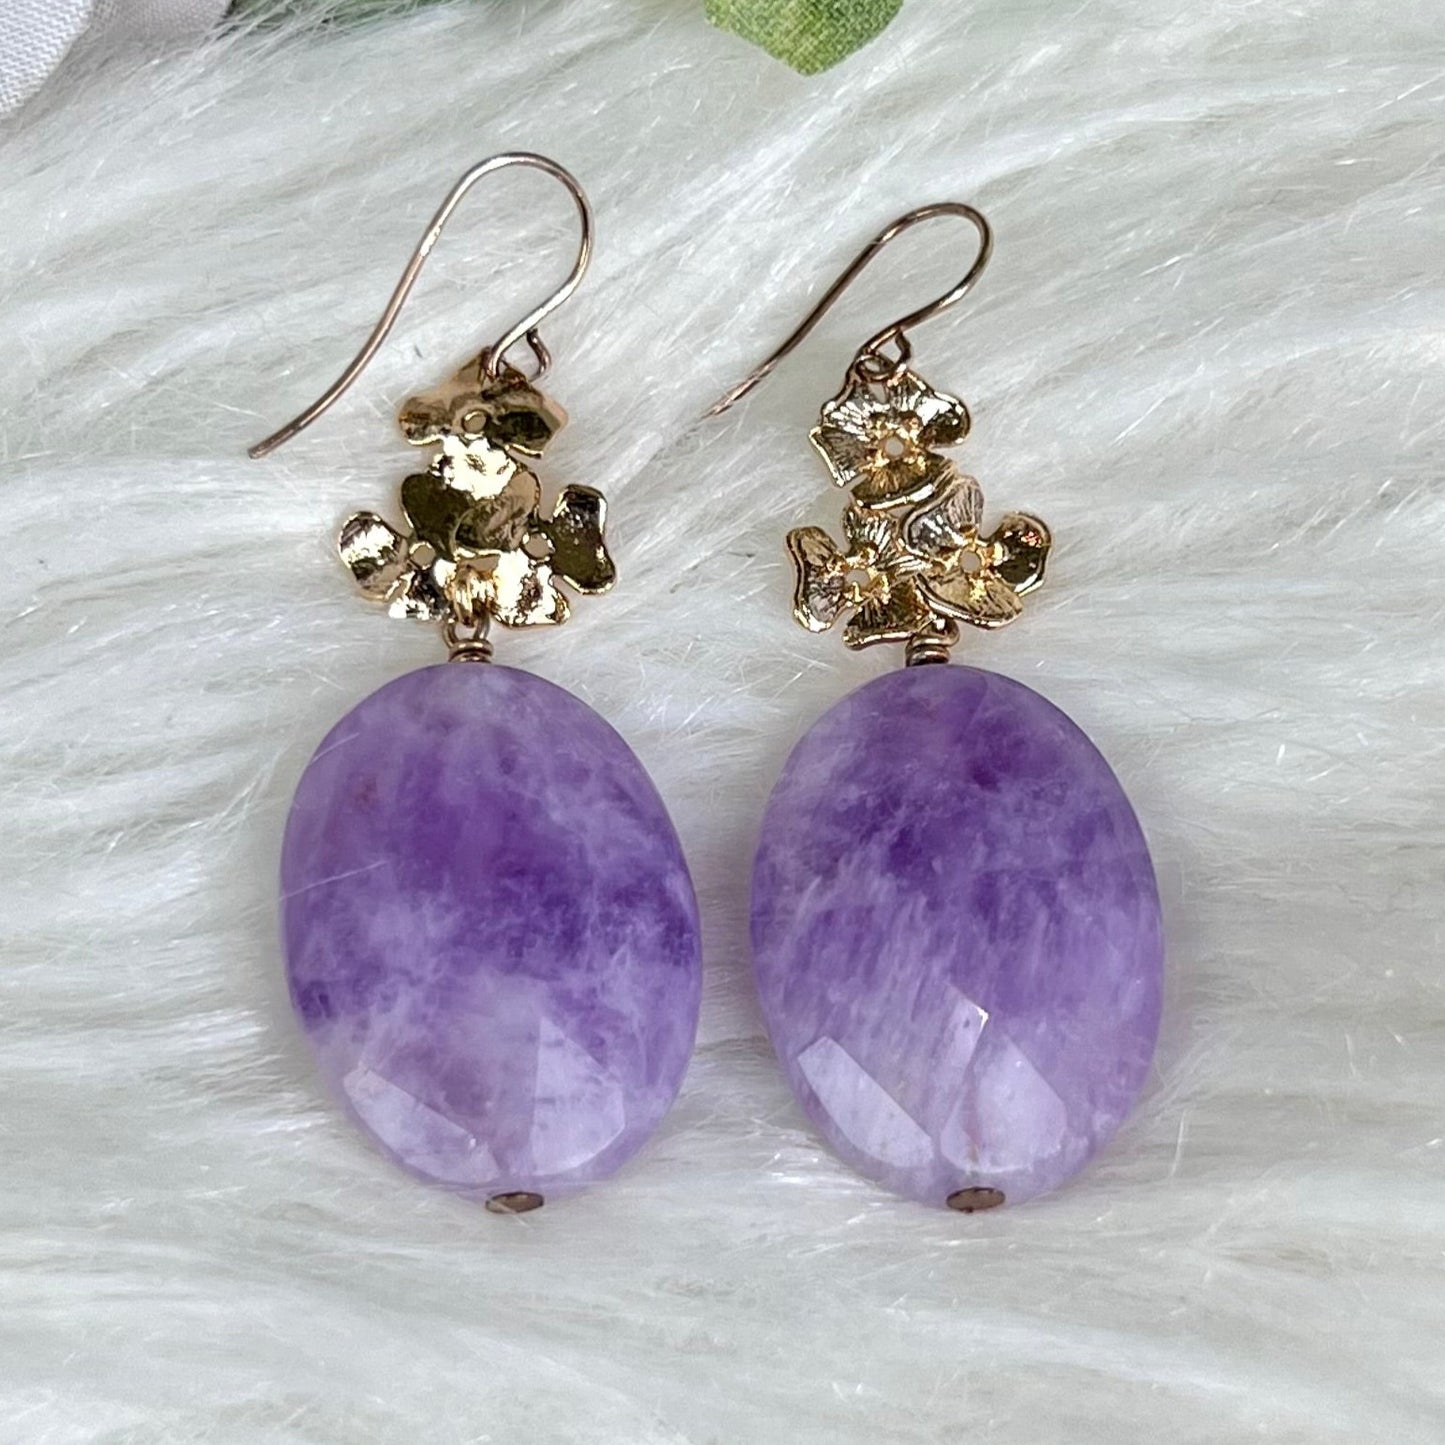 Lavender Amethyst Earrings on Floral Wire - Crystal Happenings